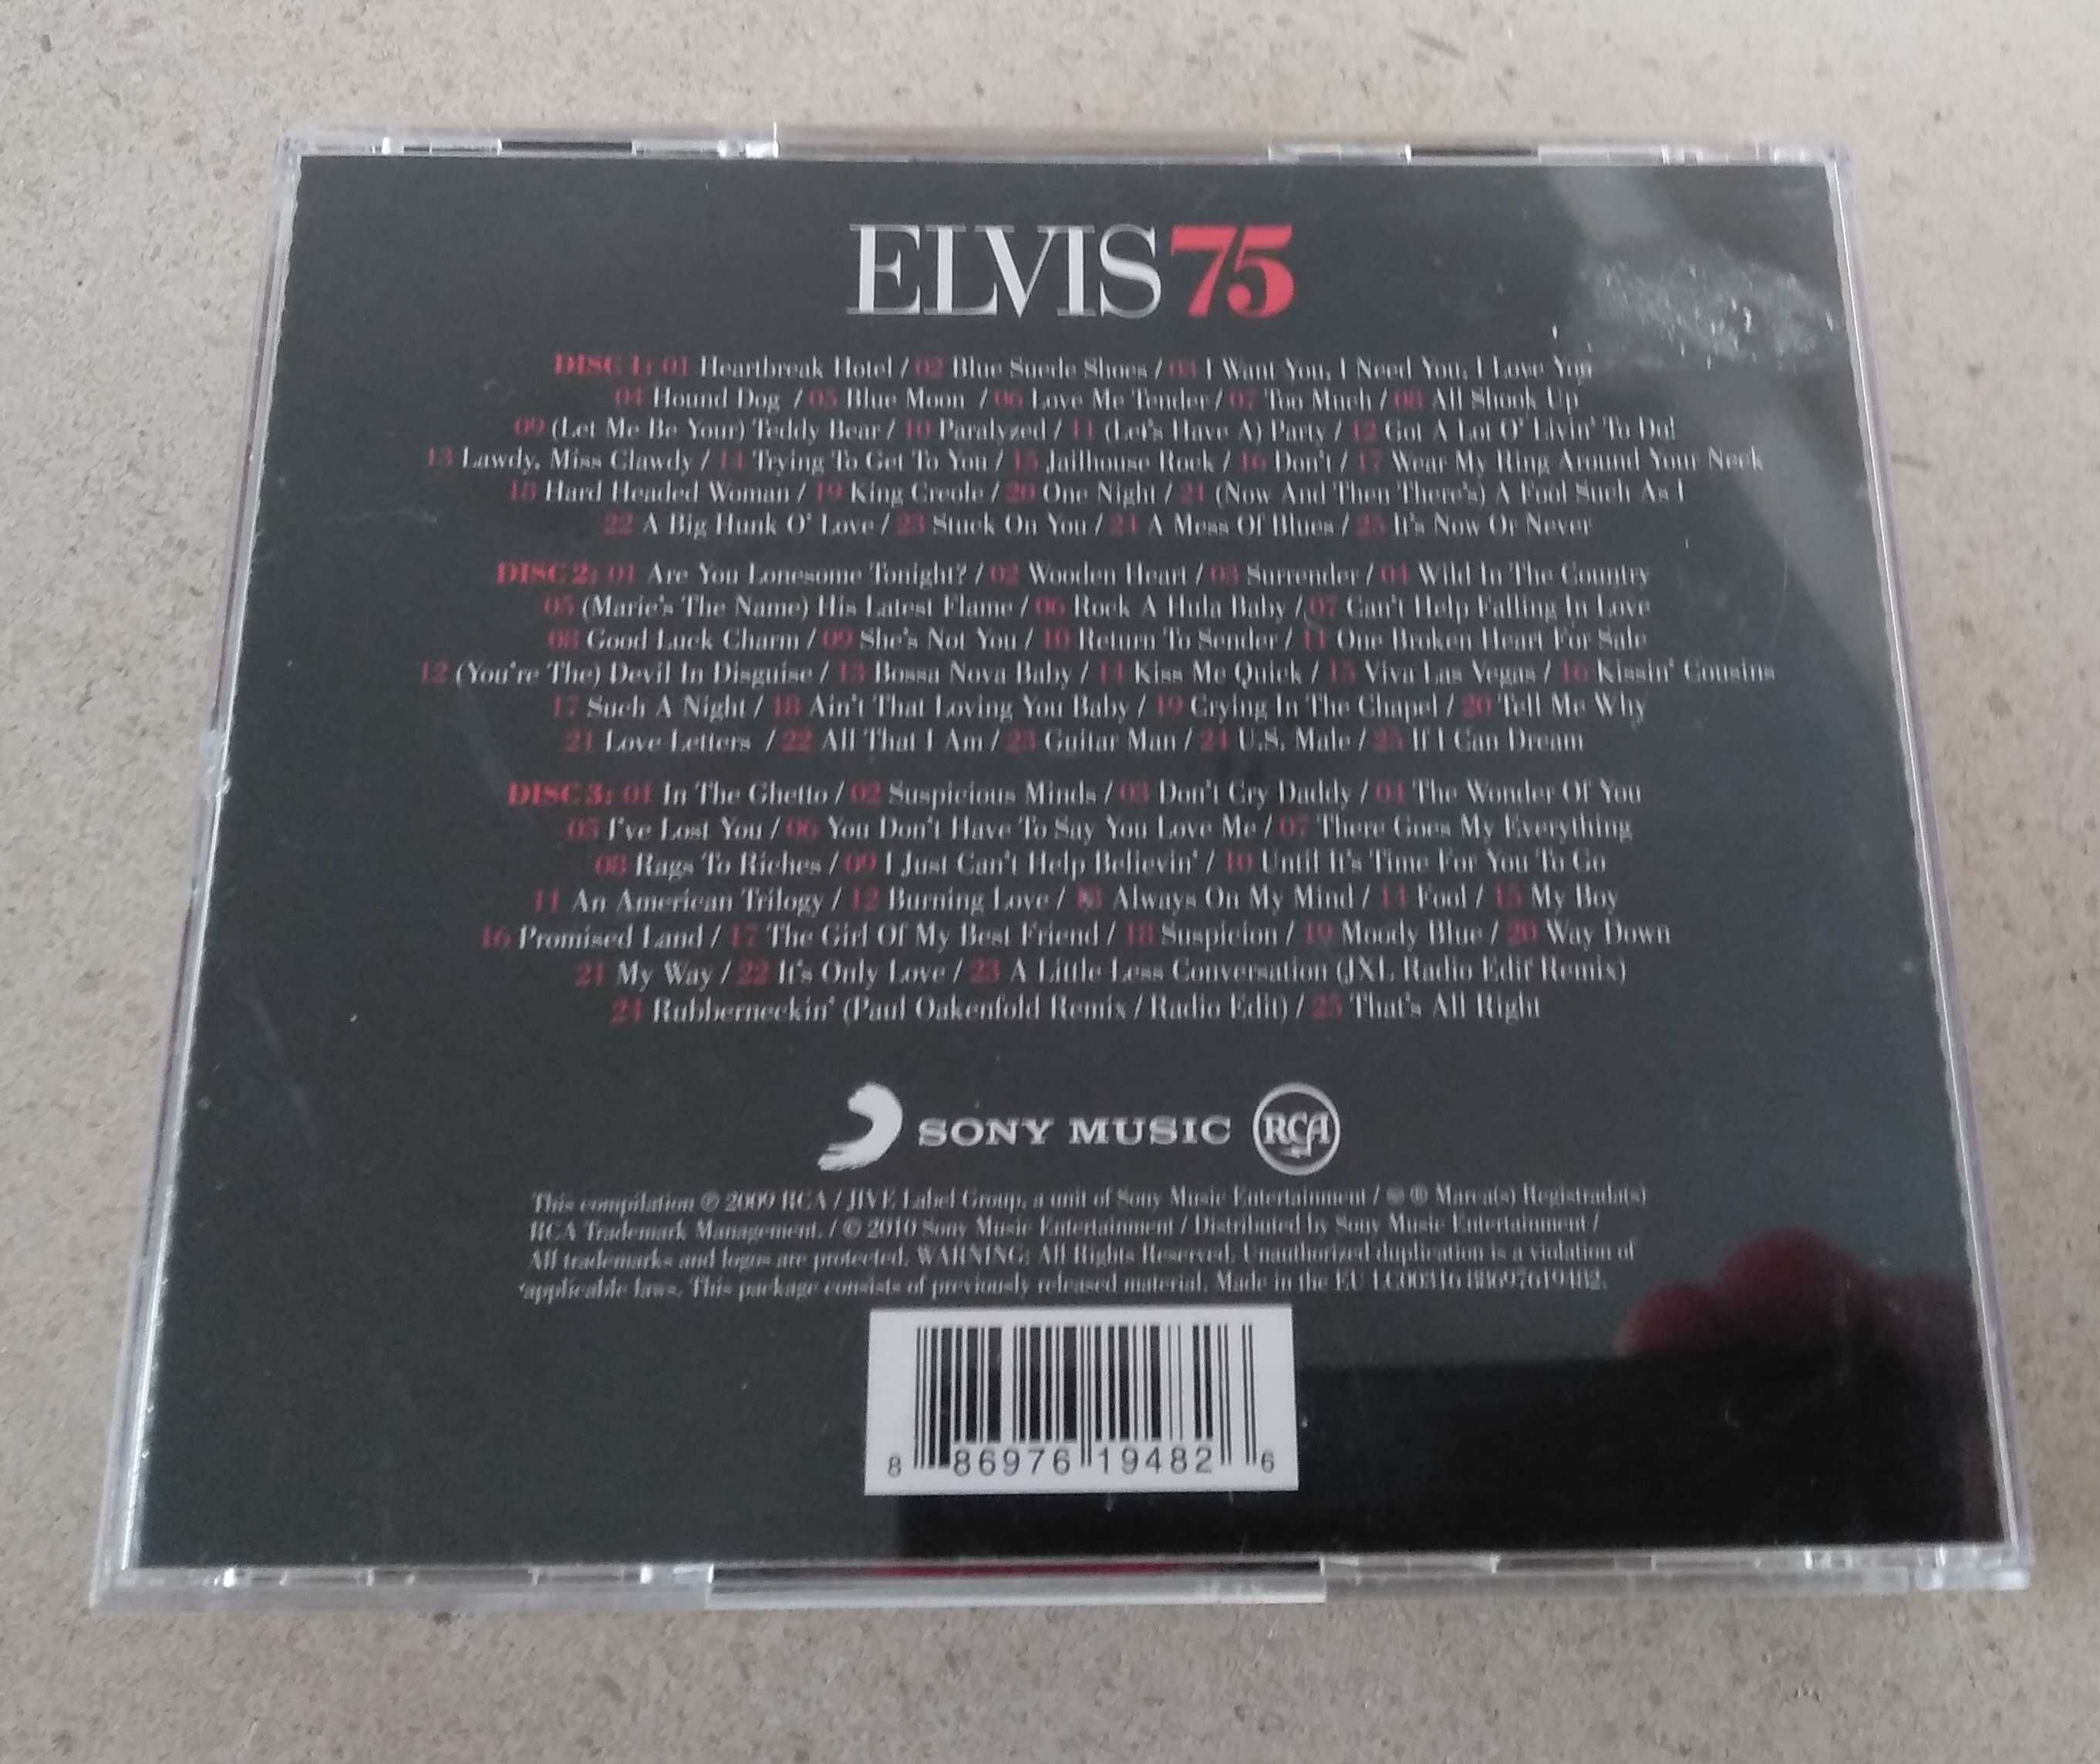 CD de música do Elvis Presley 75